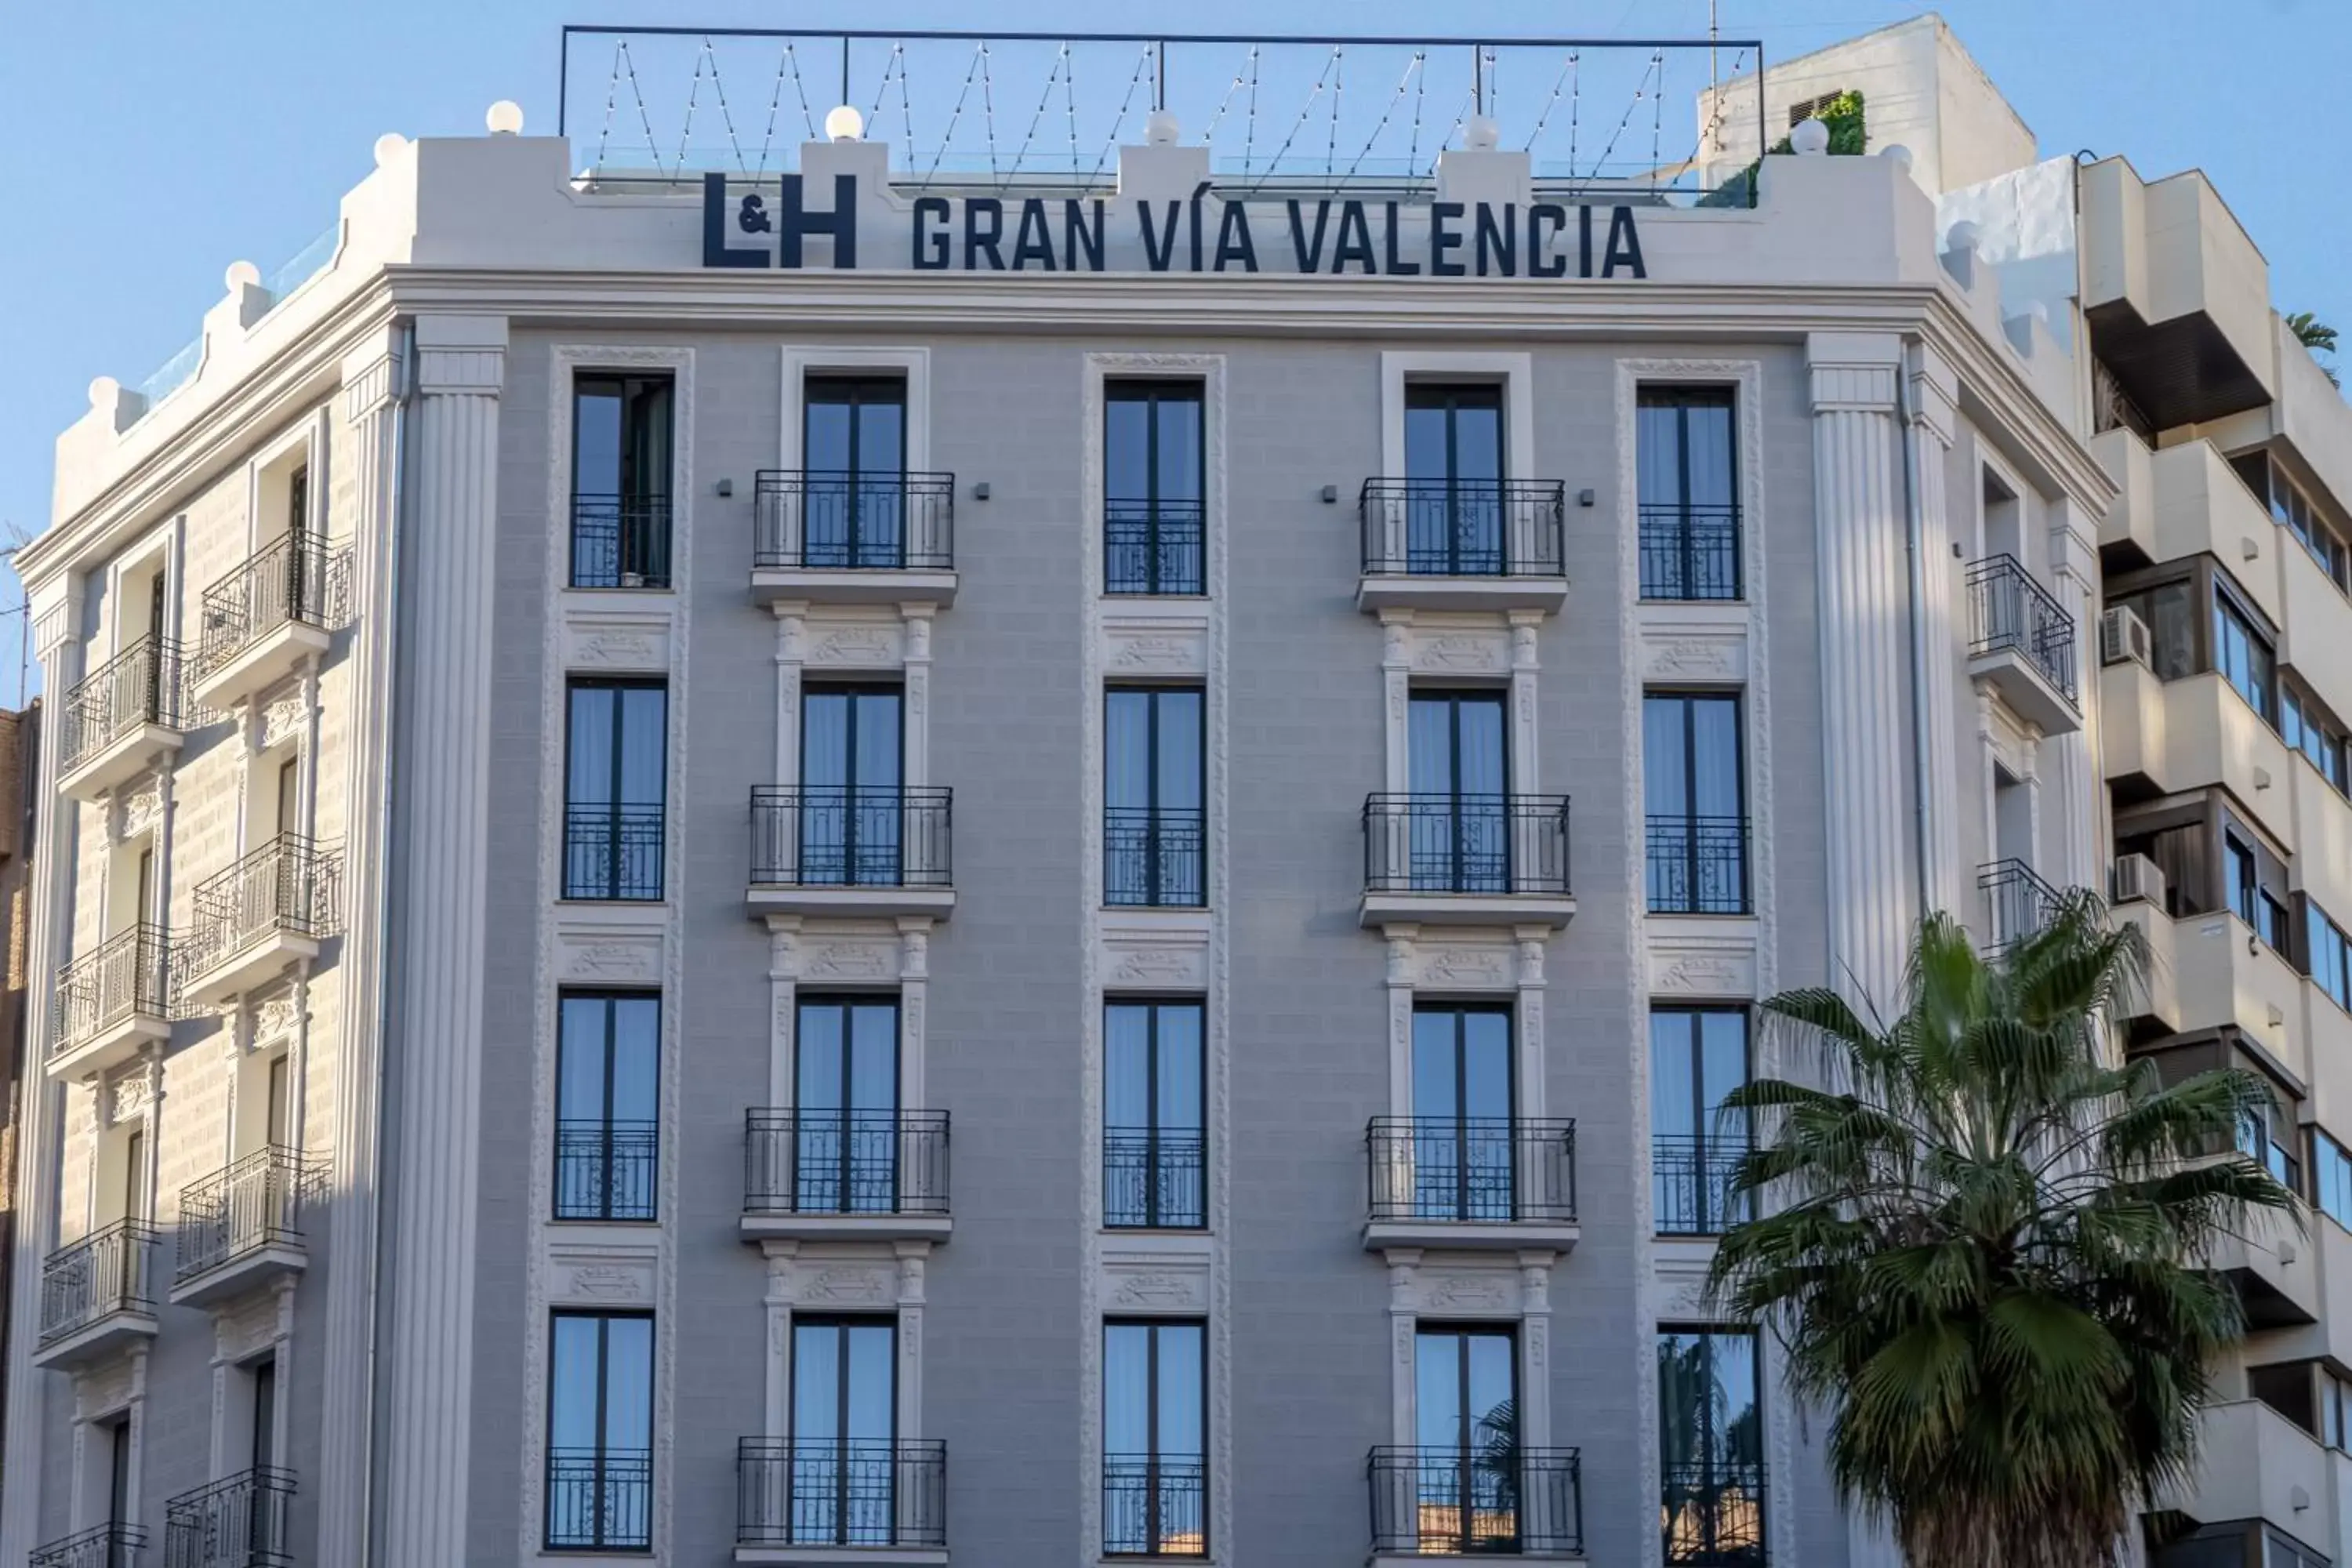 Property Building in L&H Gran Vía Valencia